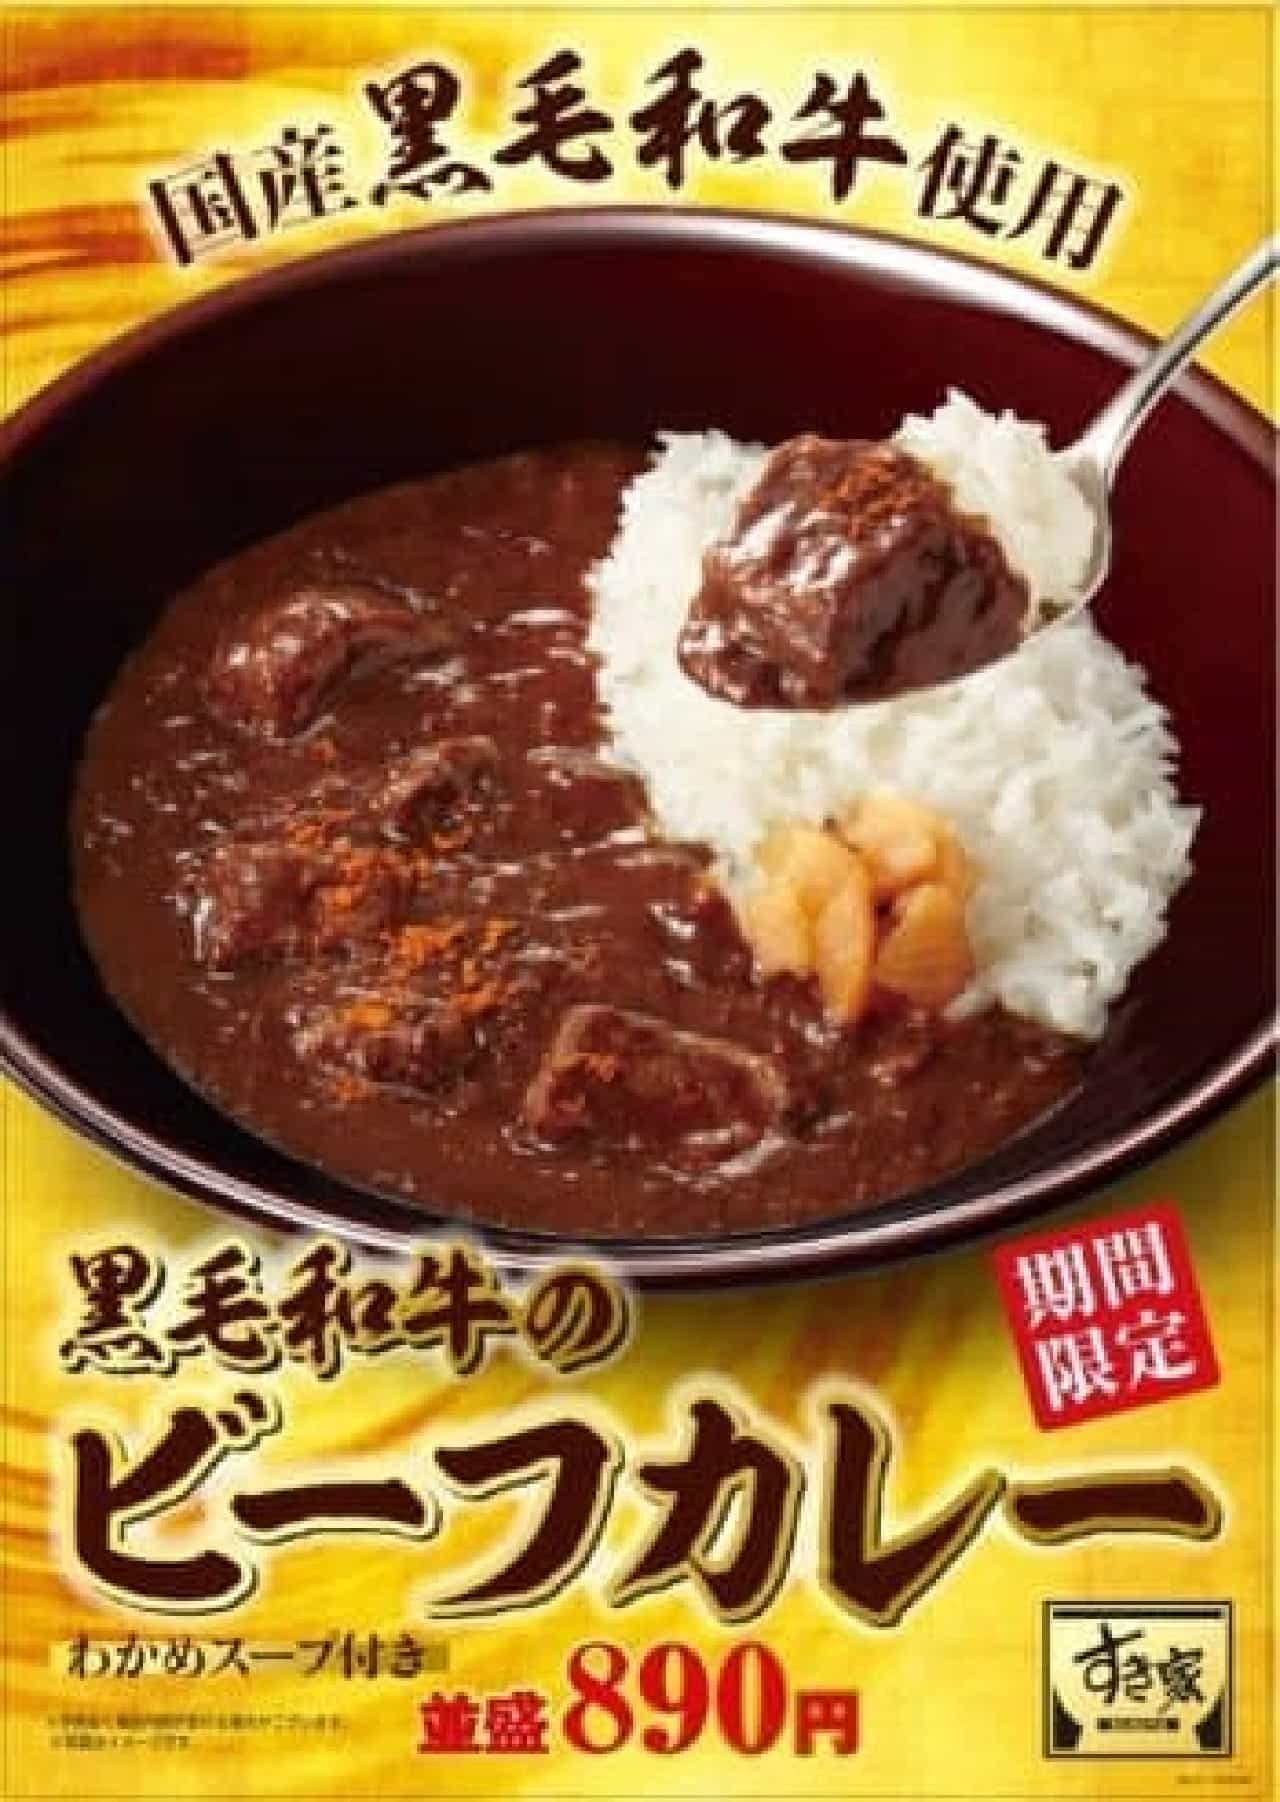 Sukiya "Japanese Black Beef Curry"